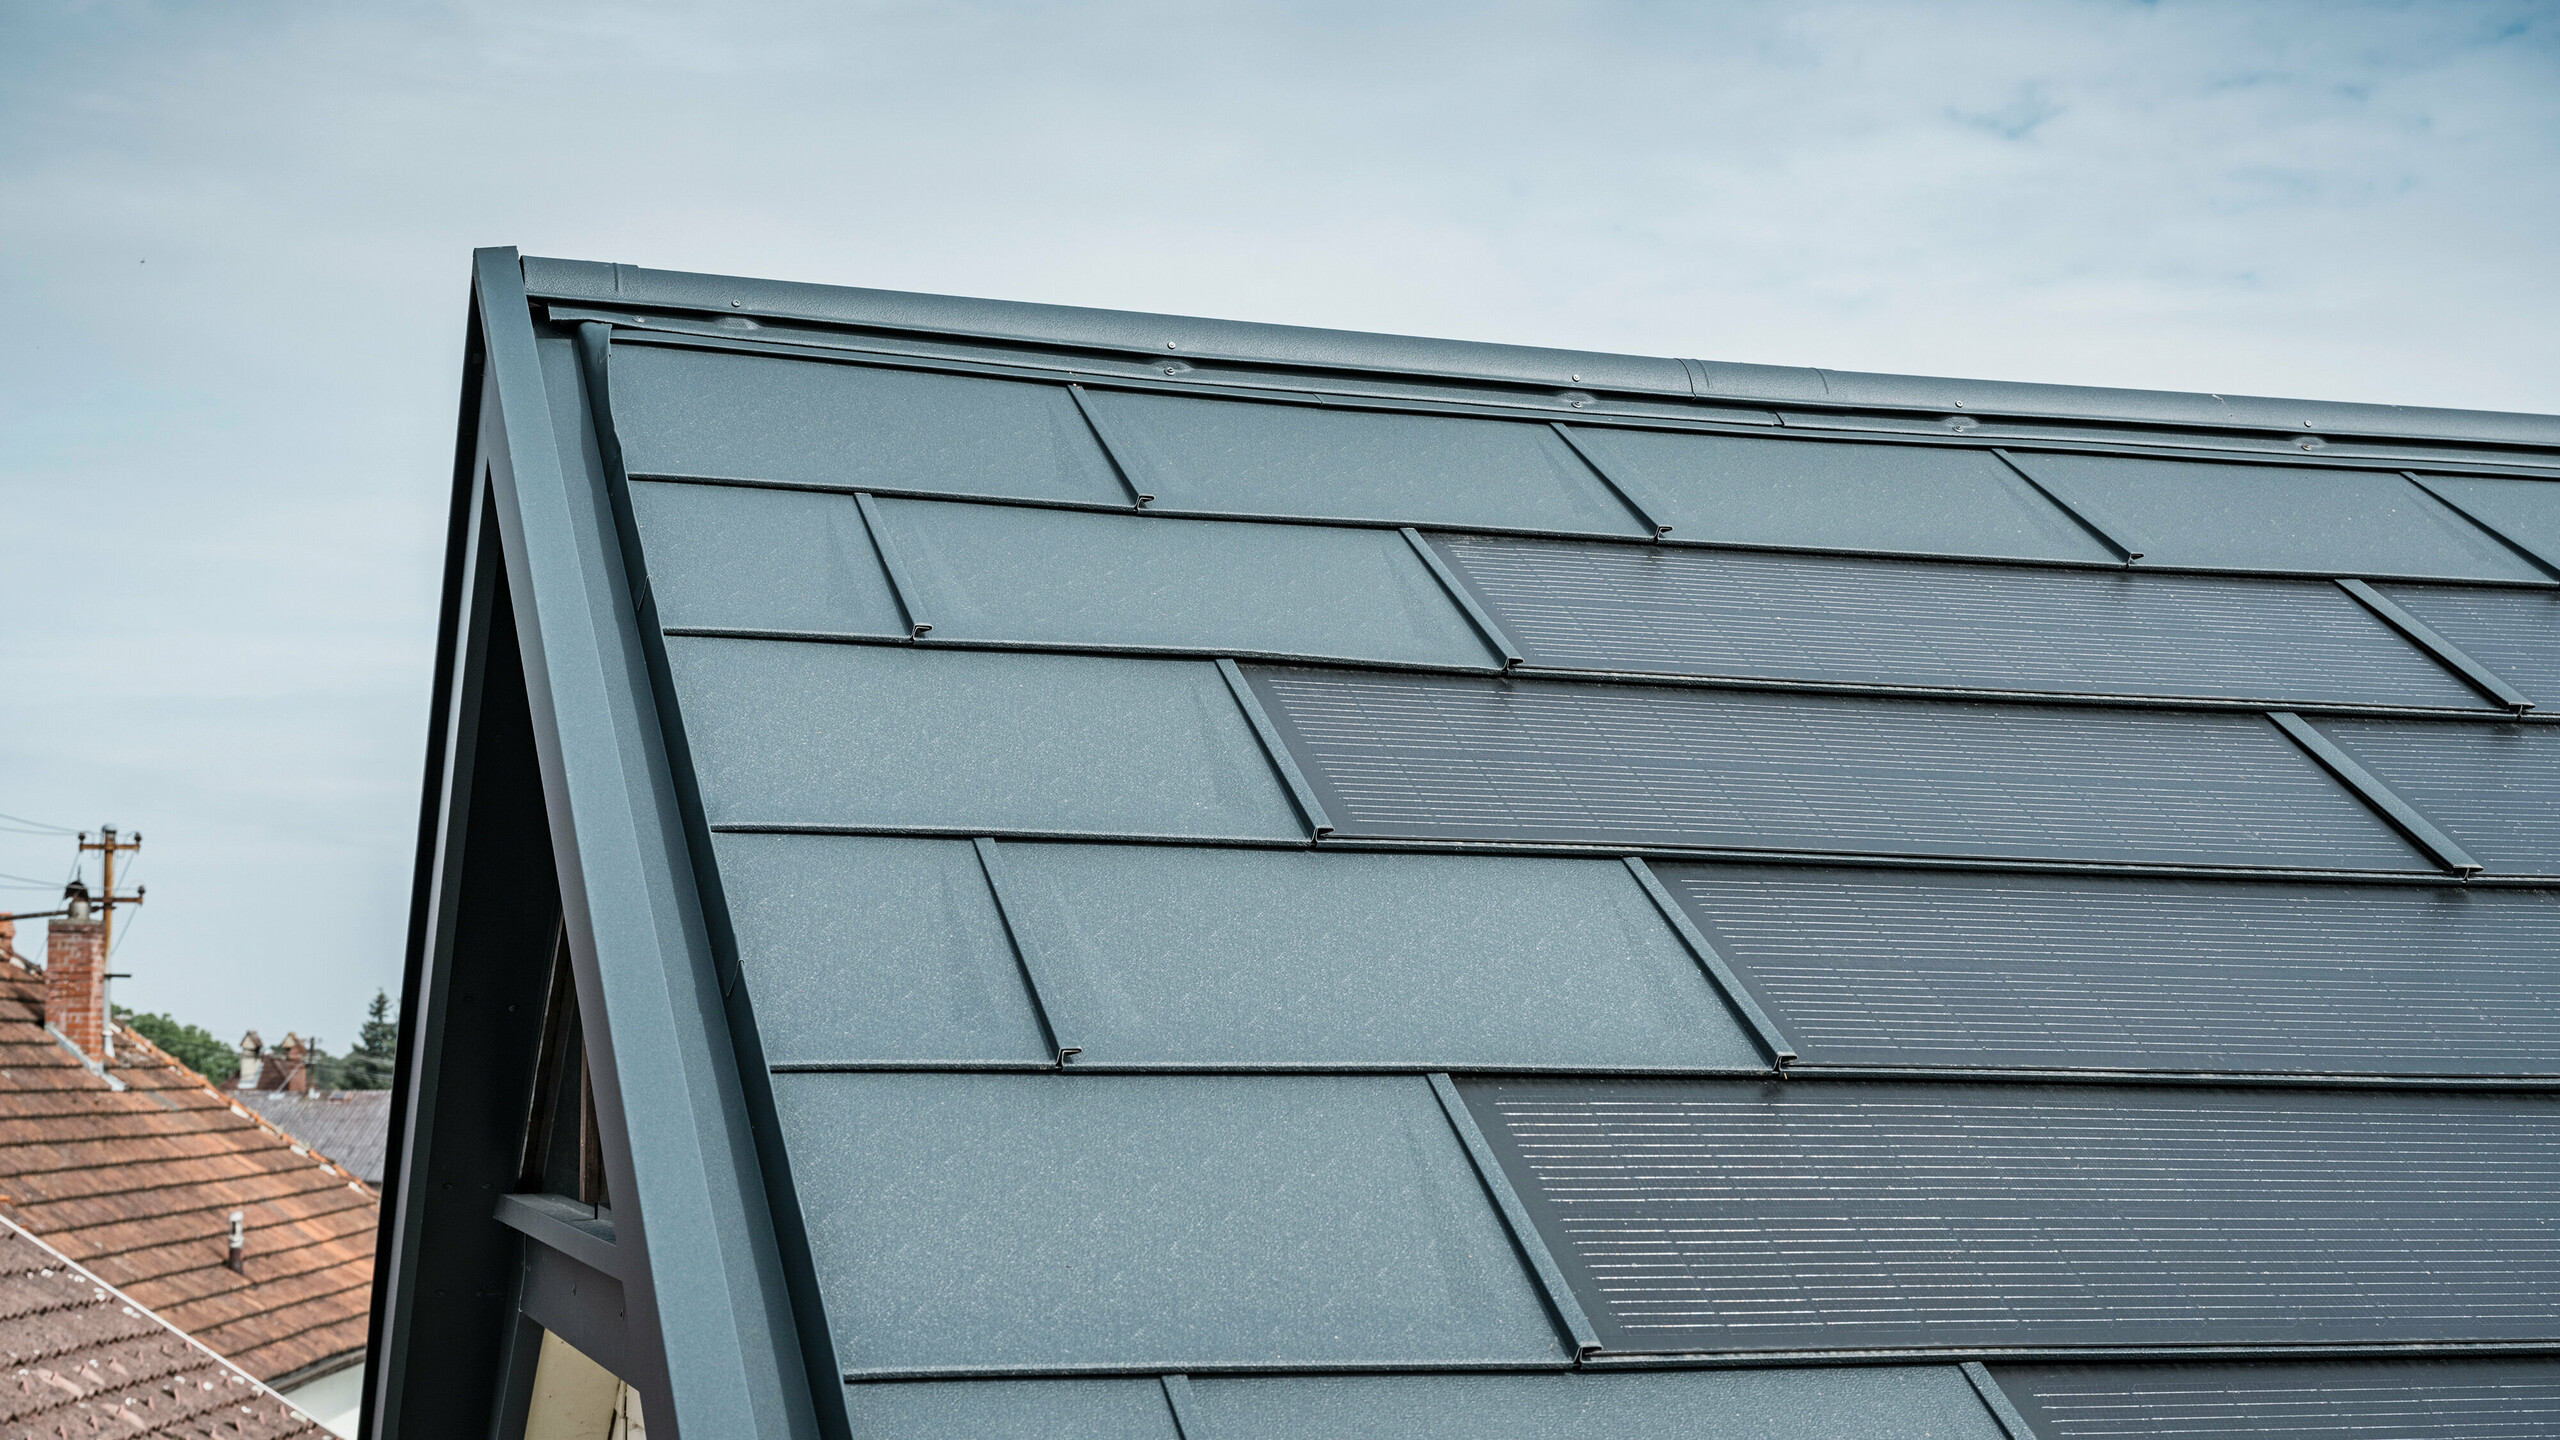 Detailansicht eines Hausdachs ausgestattet mit der innovativen PREFA Solardachplatte. Die Dachplatten mit integrierten Photovoltaikzellen präsentieren sich in einem eleganten Anthrazit. Die homogene Oberfläche fügt sich nahtlos in das Dach ein und sorgt damit für eine moderne und saubere Optik. Das innovative Dachsystem schafft eine effiziente Energienutzung ohne Beeinträchtigung der Ästhetik.